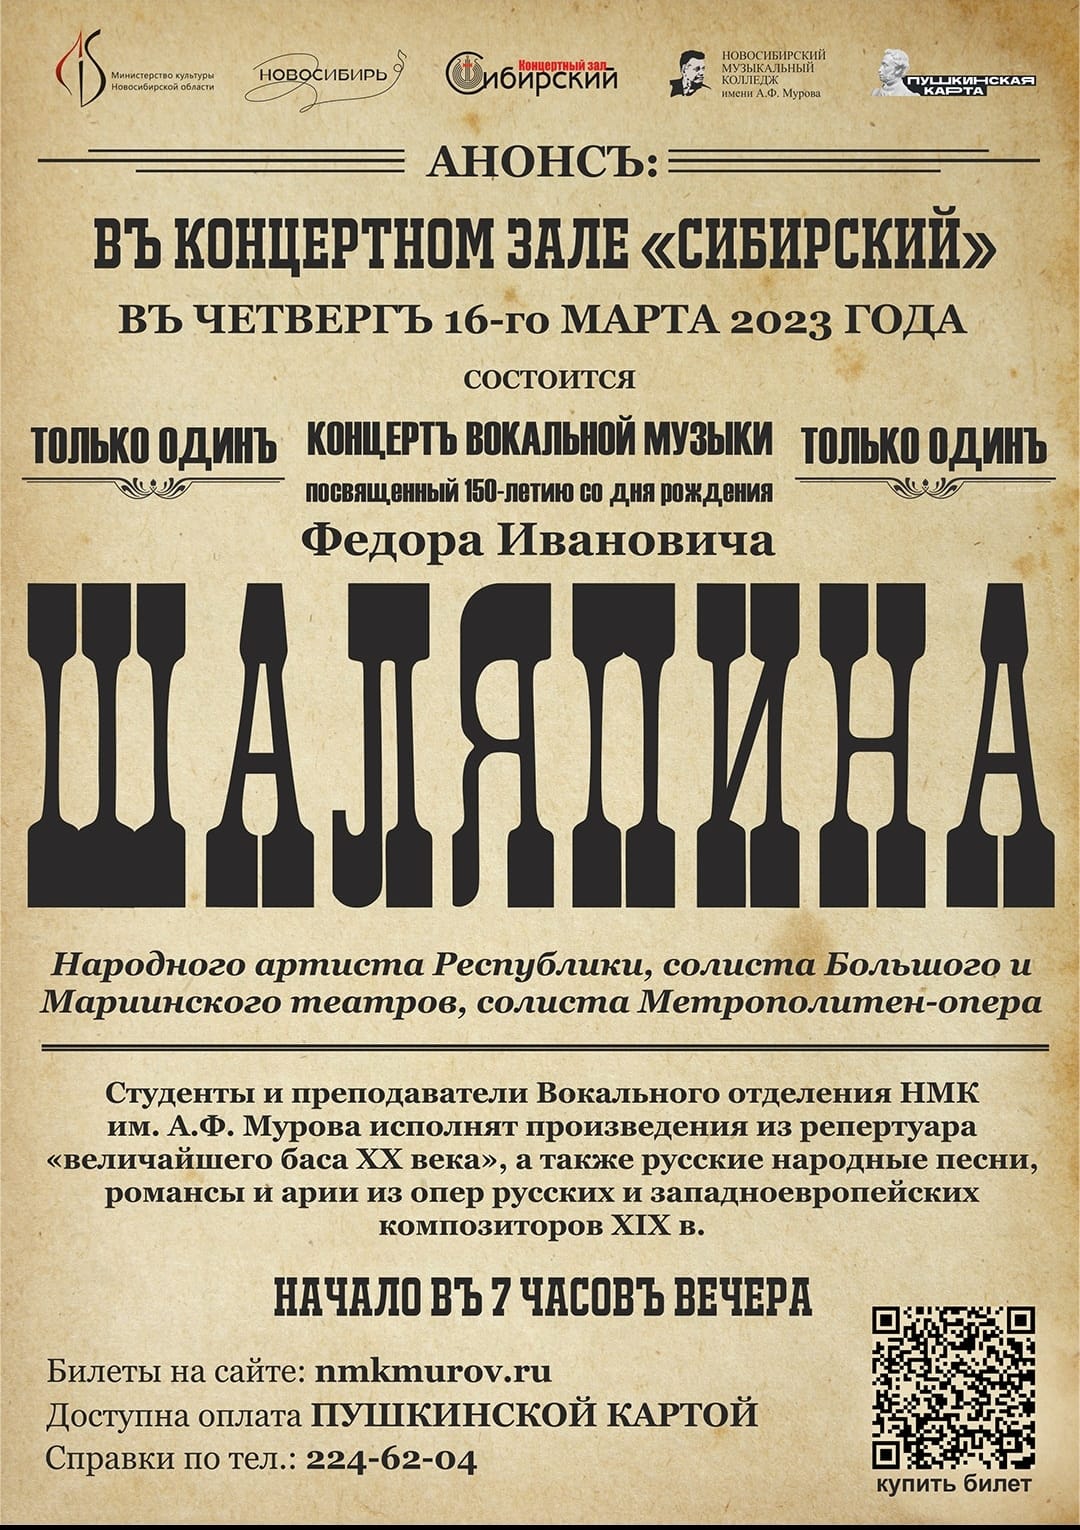 Афиша, концерт вокальной музыки, посвященный 150-летию со дня рождения Шаляпина